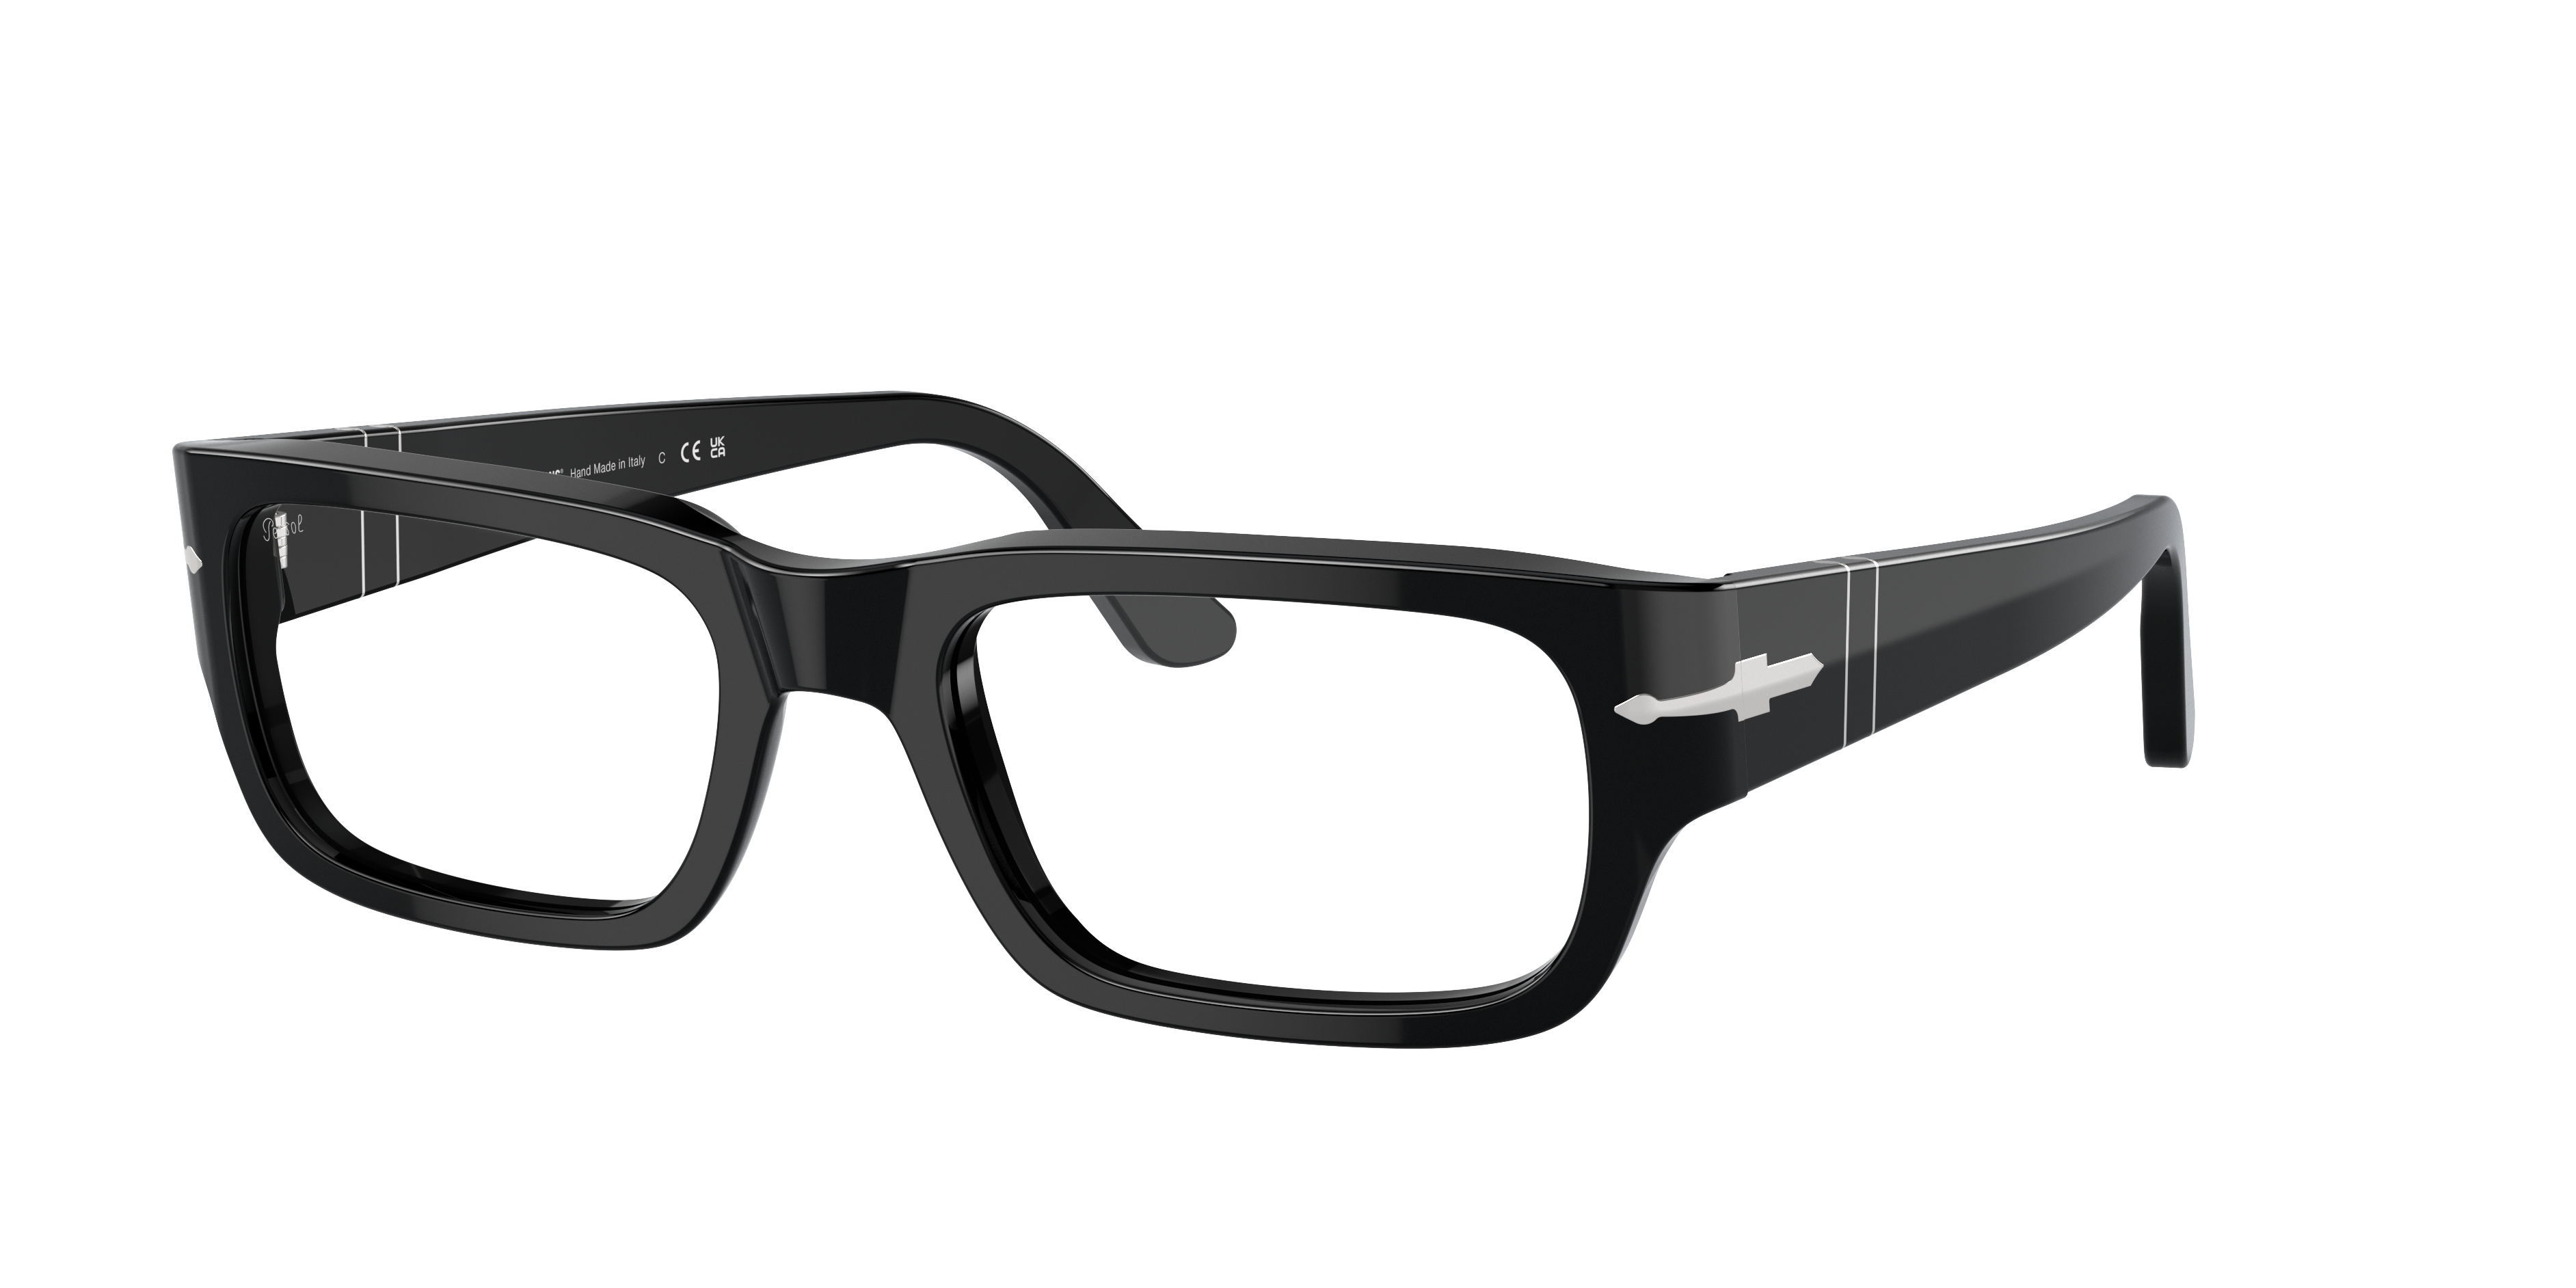 Consulte nosso catálogo de Óculos de Sol Persol Eyewear com diversos modelos e preços para sua escolha.